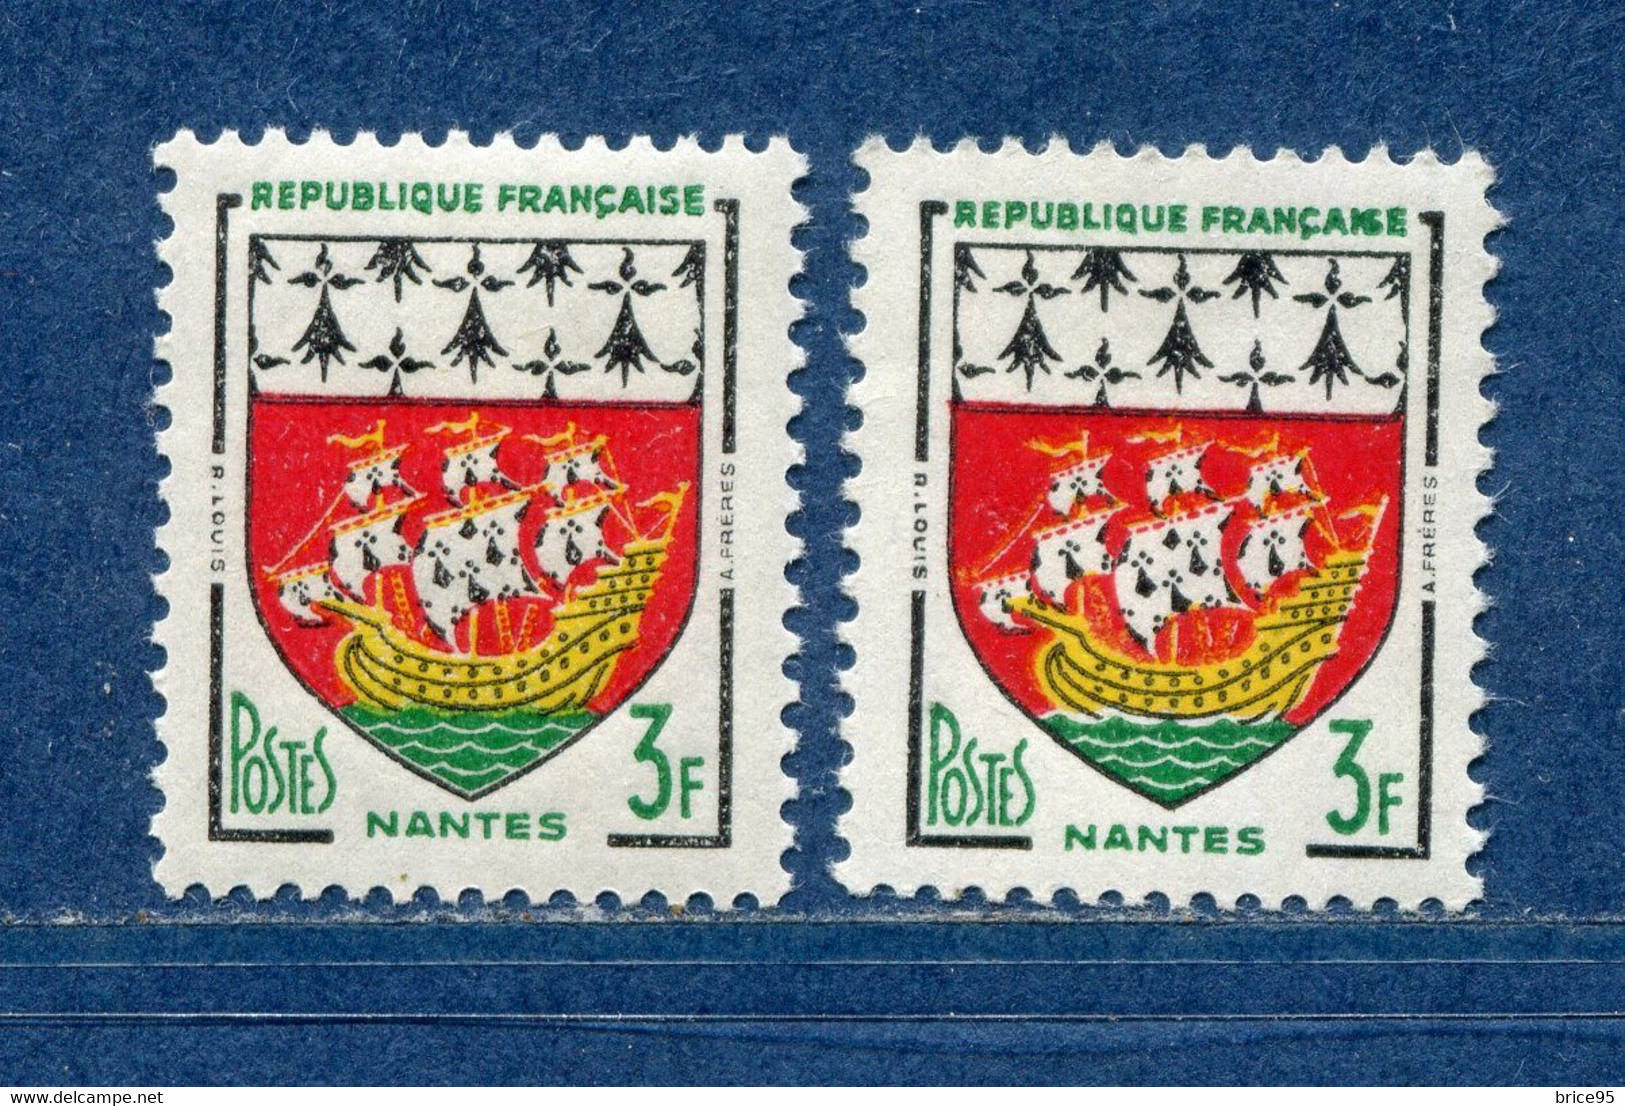 ⭐ France - Variété - YT N° 1185 - Couleurs - Pétouilles - Neuf Sans Charnière - 1958 ⭐ - Ungebraucht